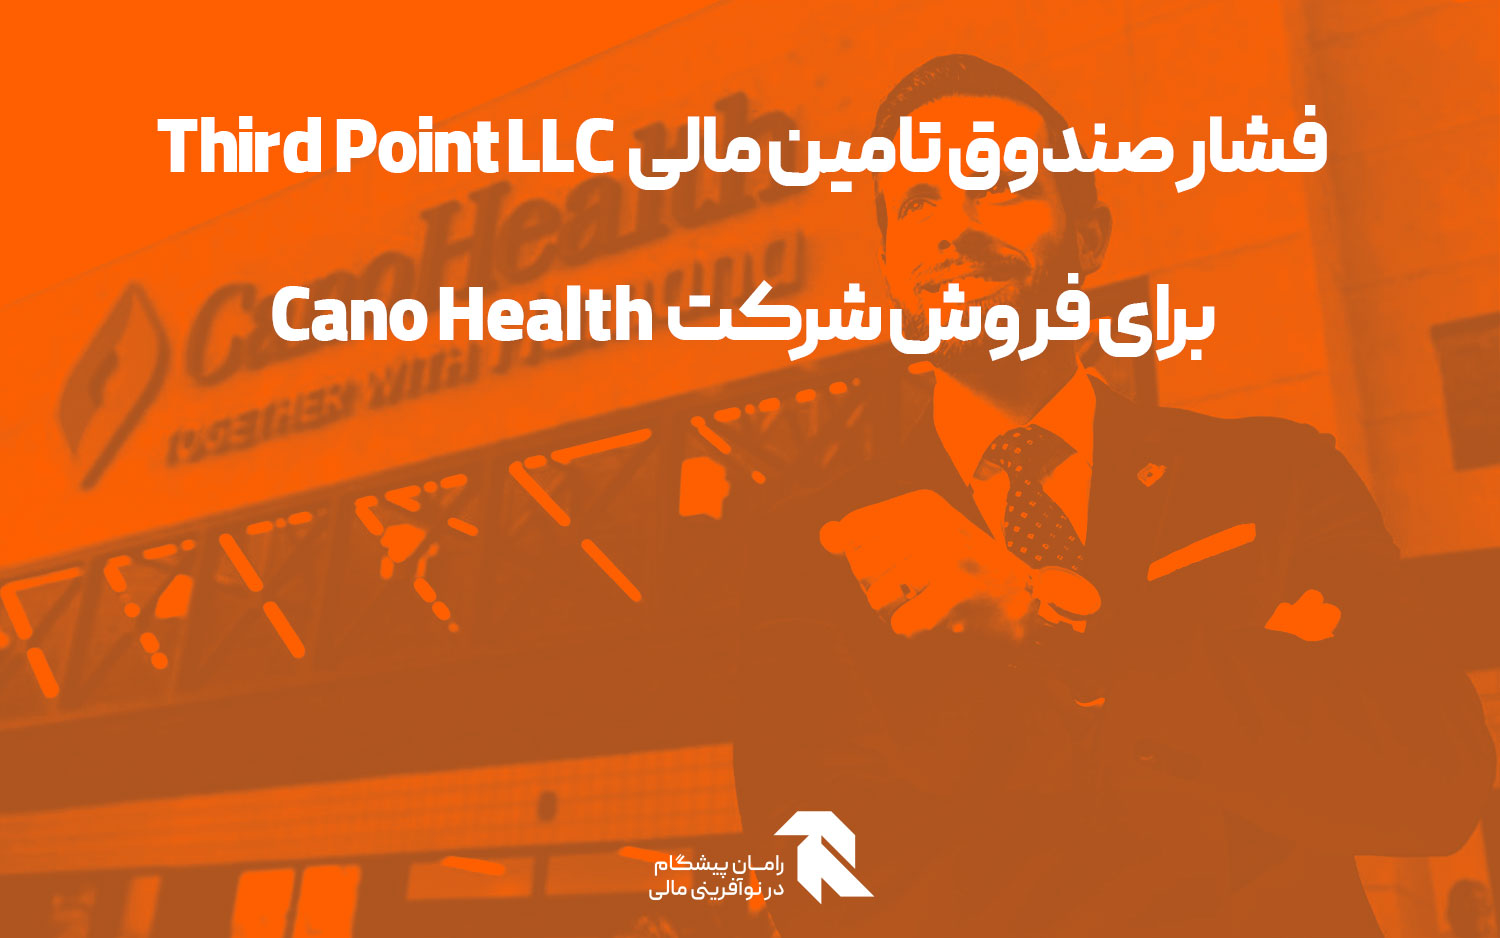 فشار صندوق تامین مالی Third Point LLC برای فروش شرکت Cano Health